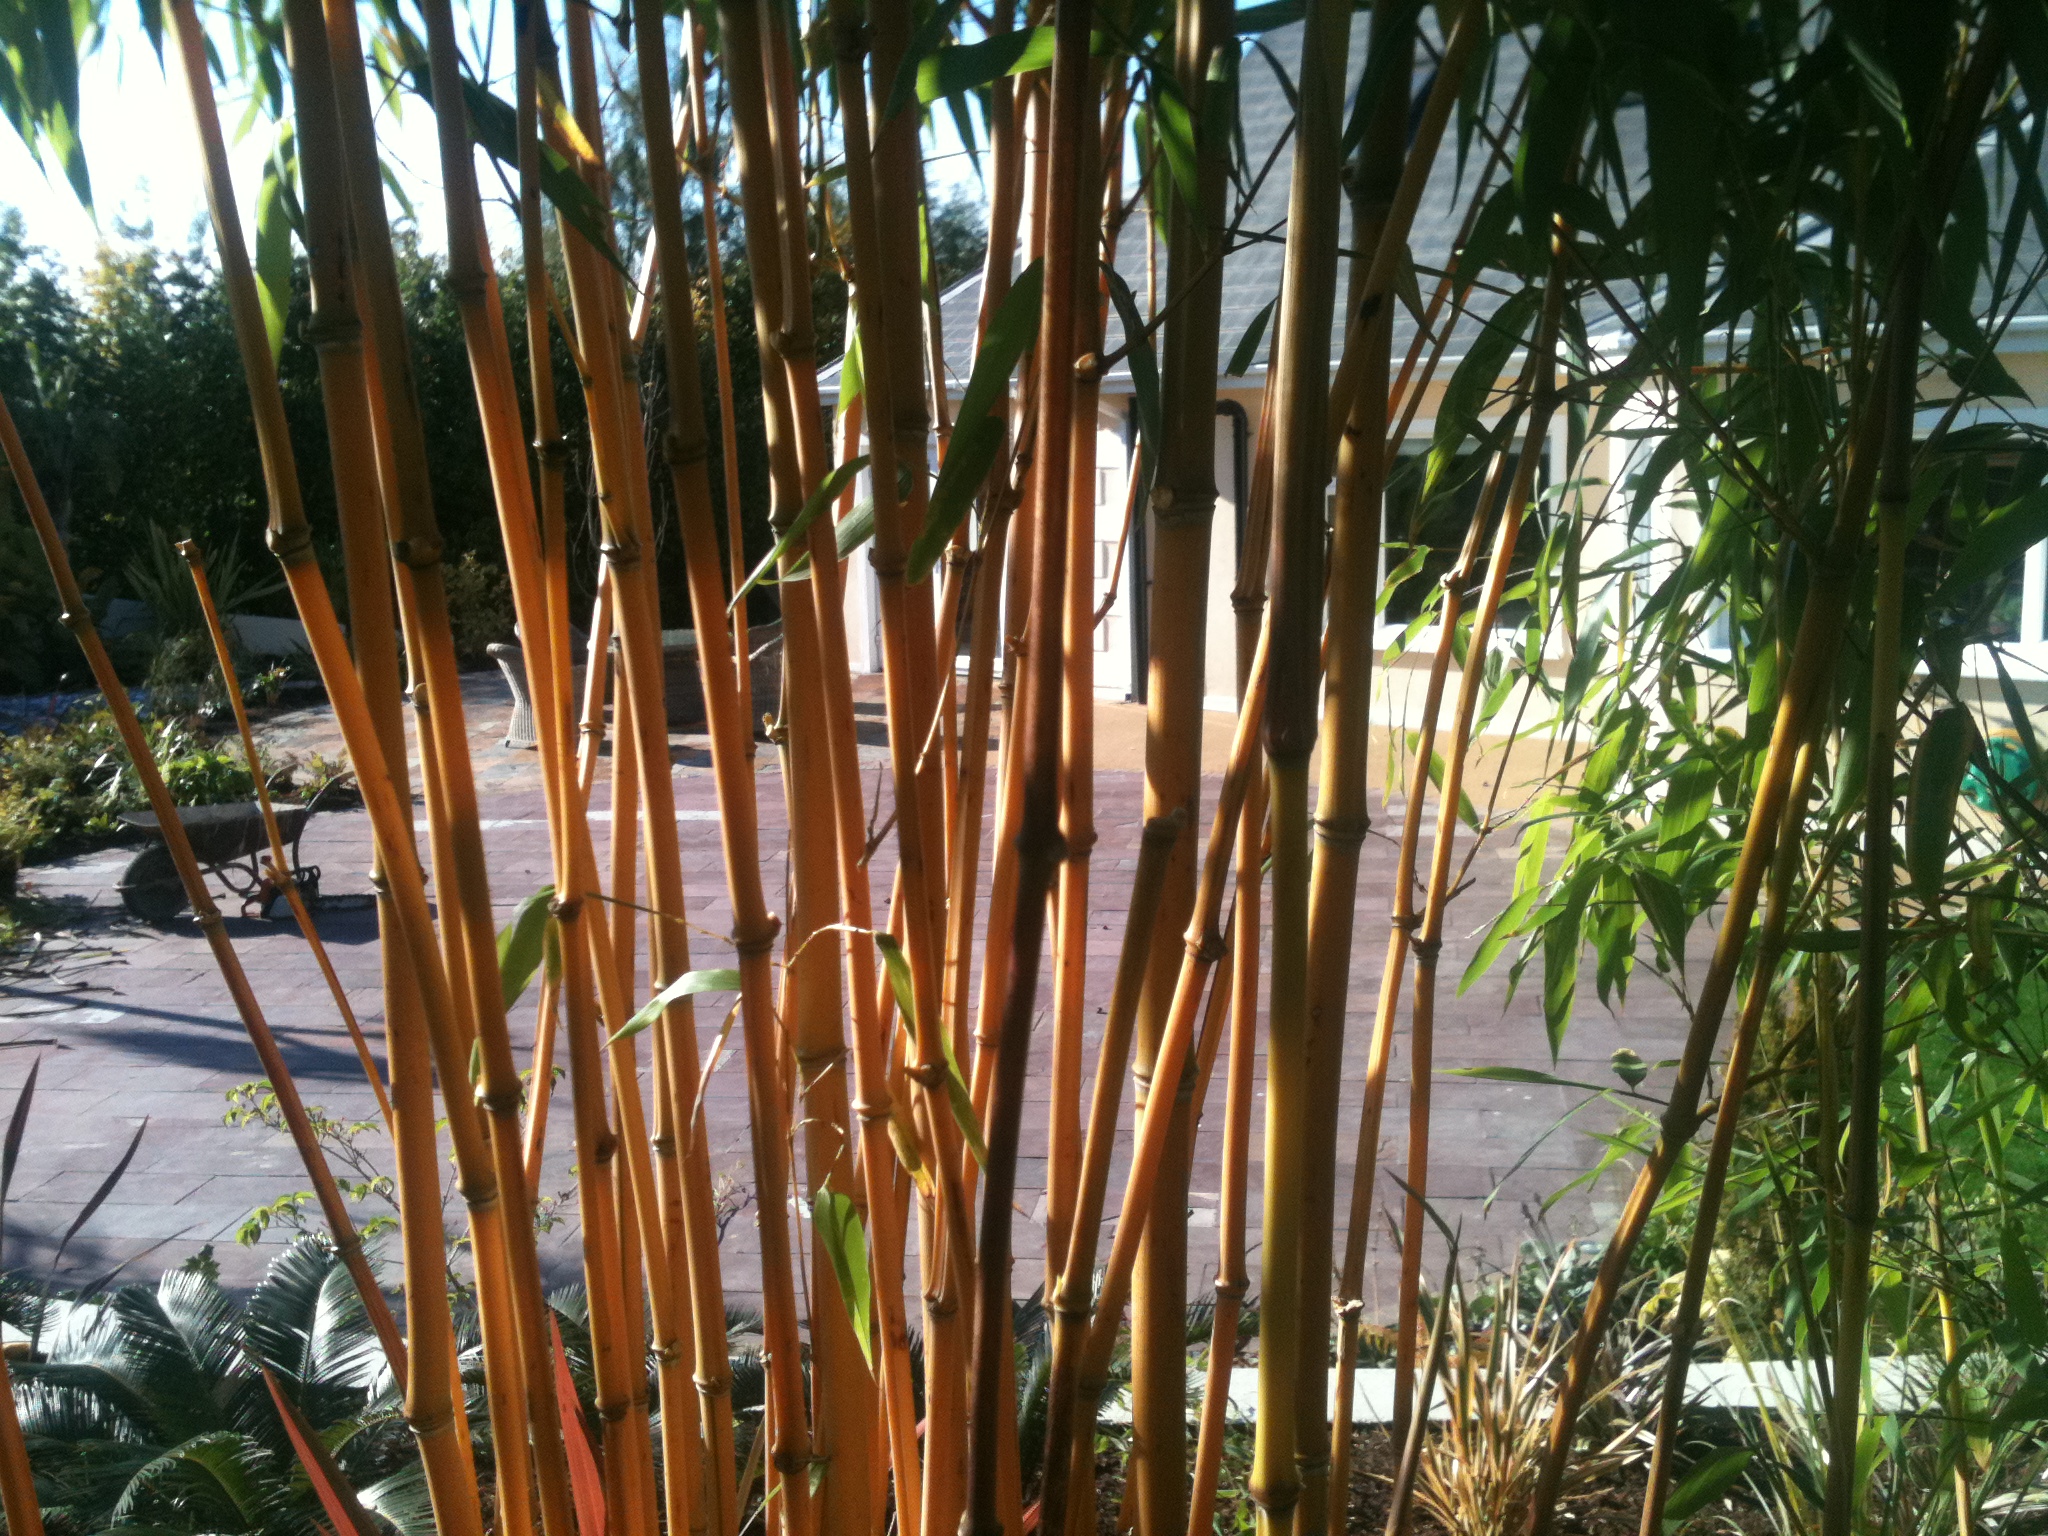 Bamboo clump